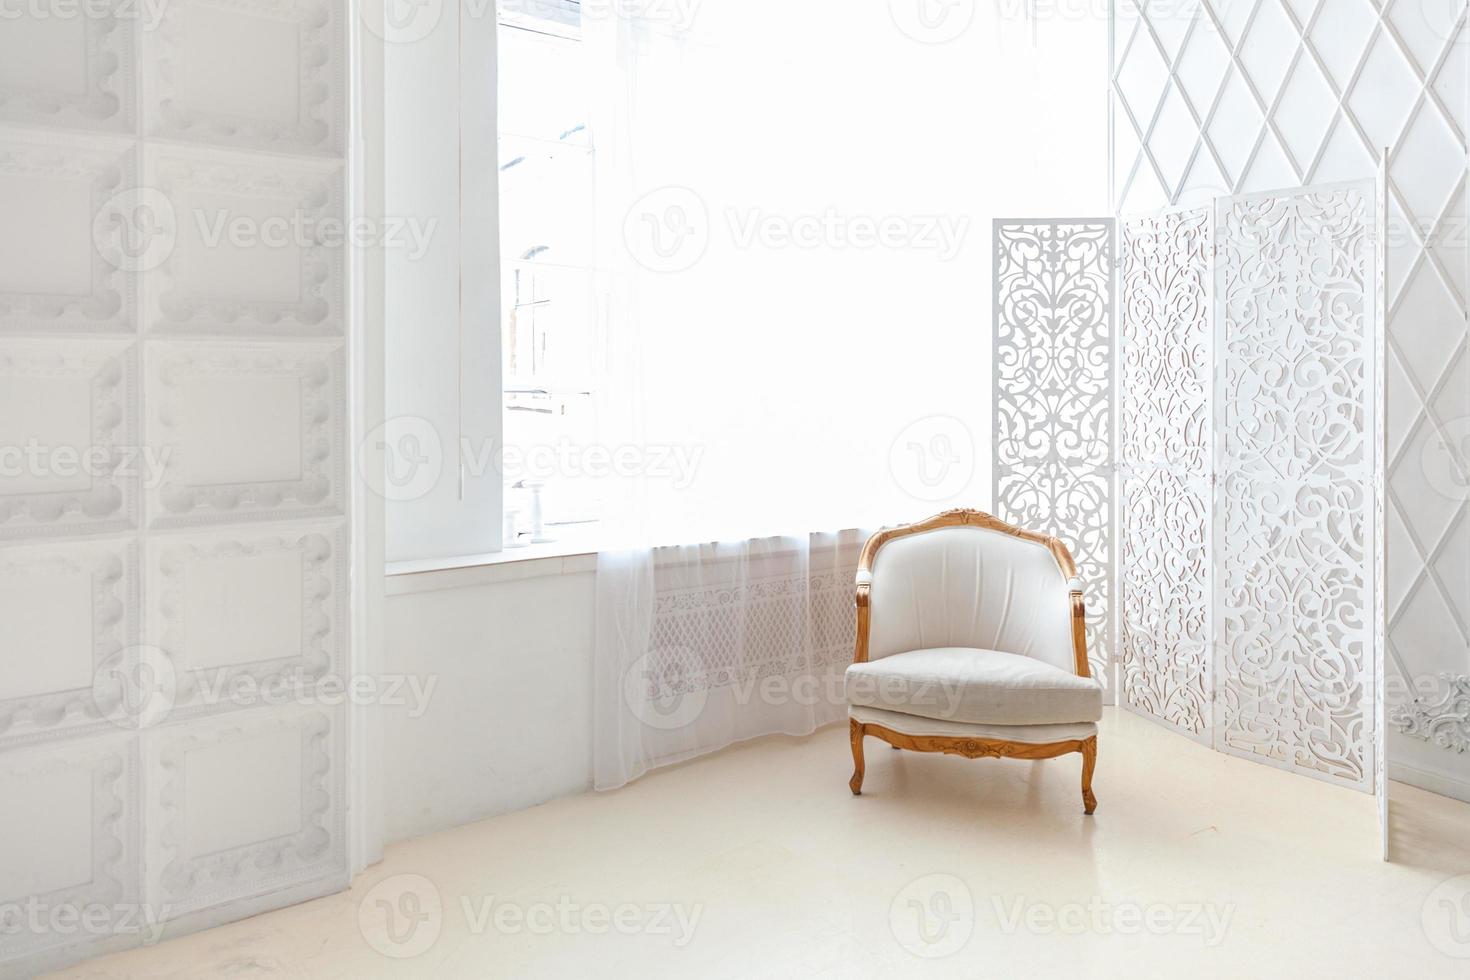 interni eleganti della camera da letto soppalcata. spazioso appartamento di design con pareti chiare, ampie finestre e poltrona. arredamento moderno e pulito con mobili eleganti in stile scandinavo minimalista. foto